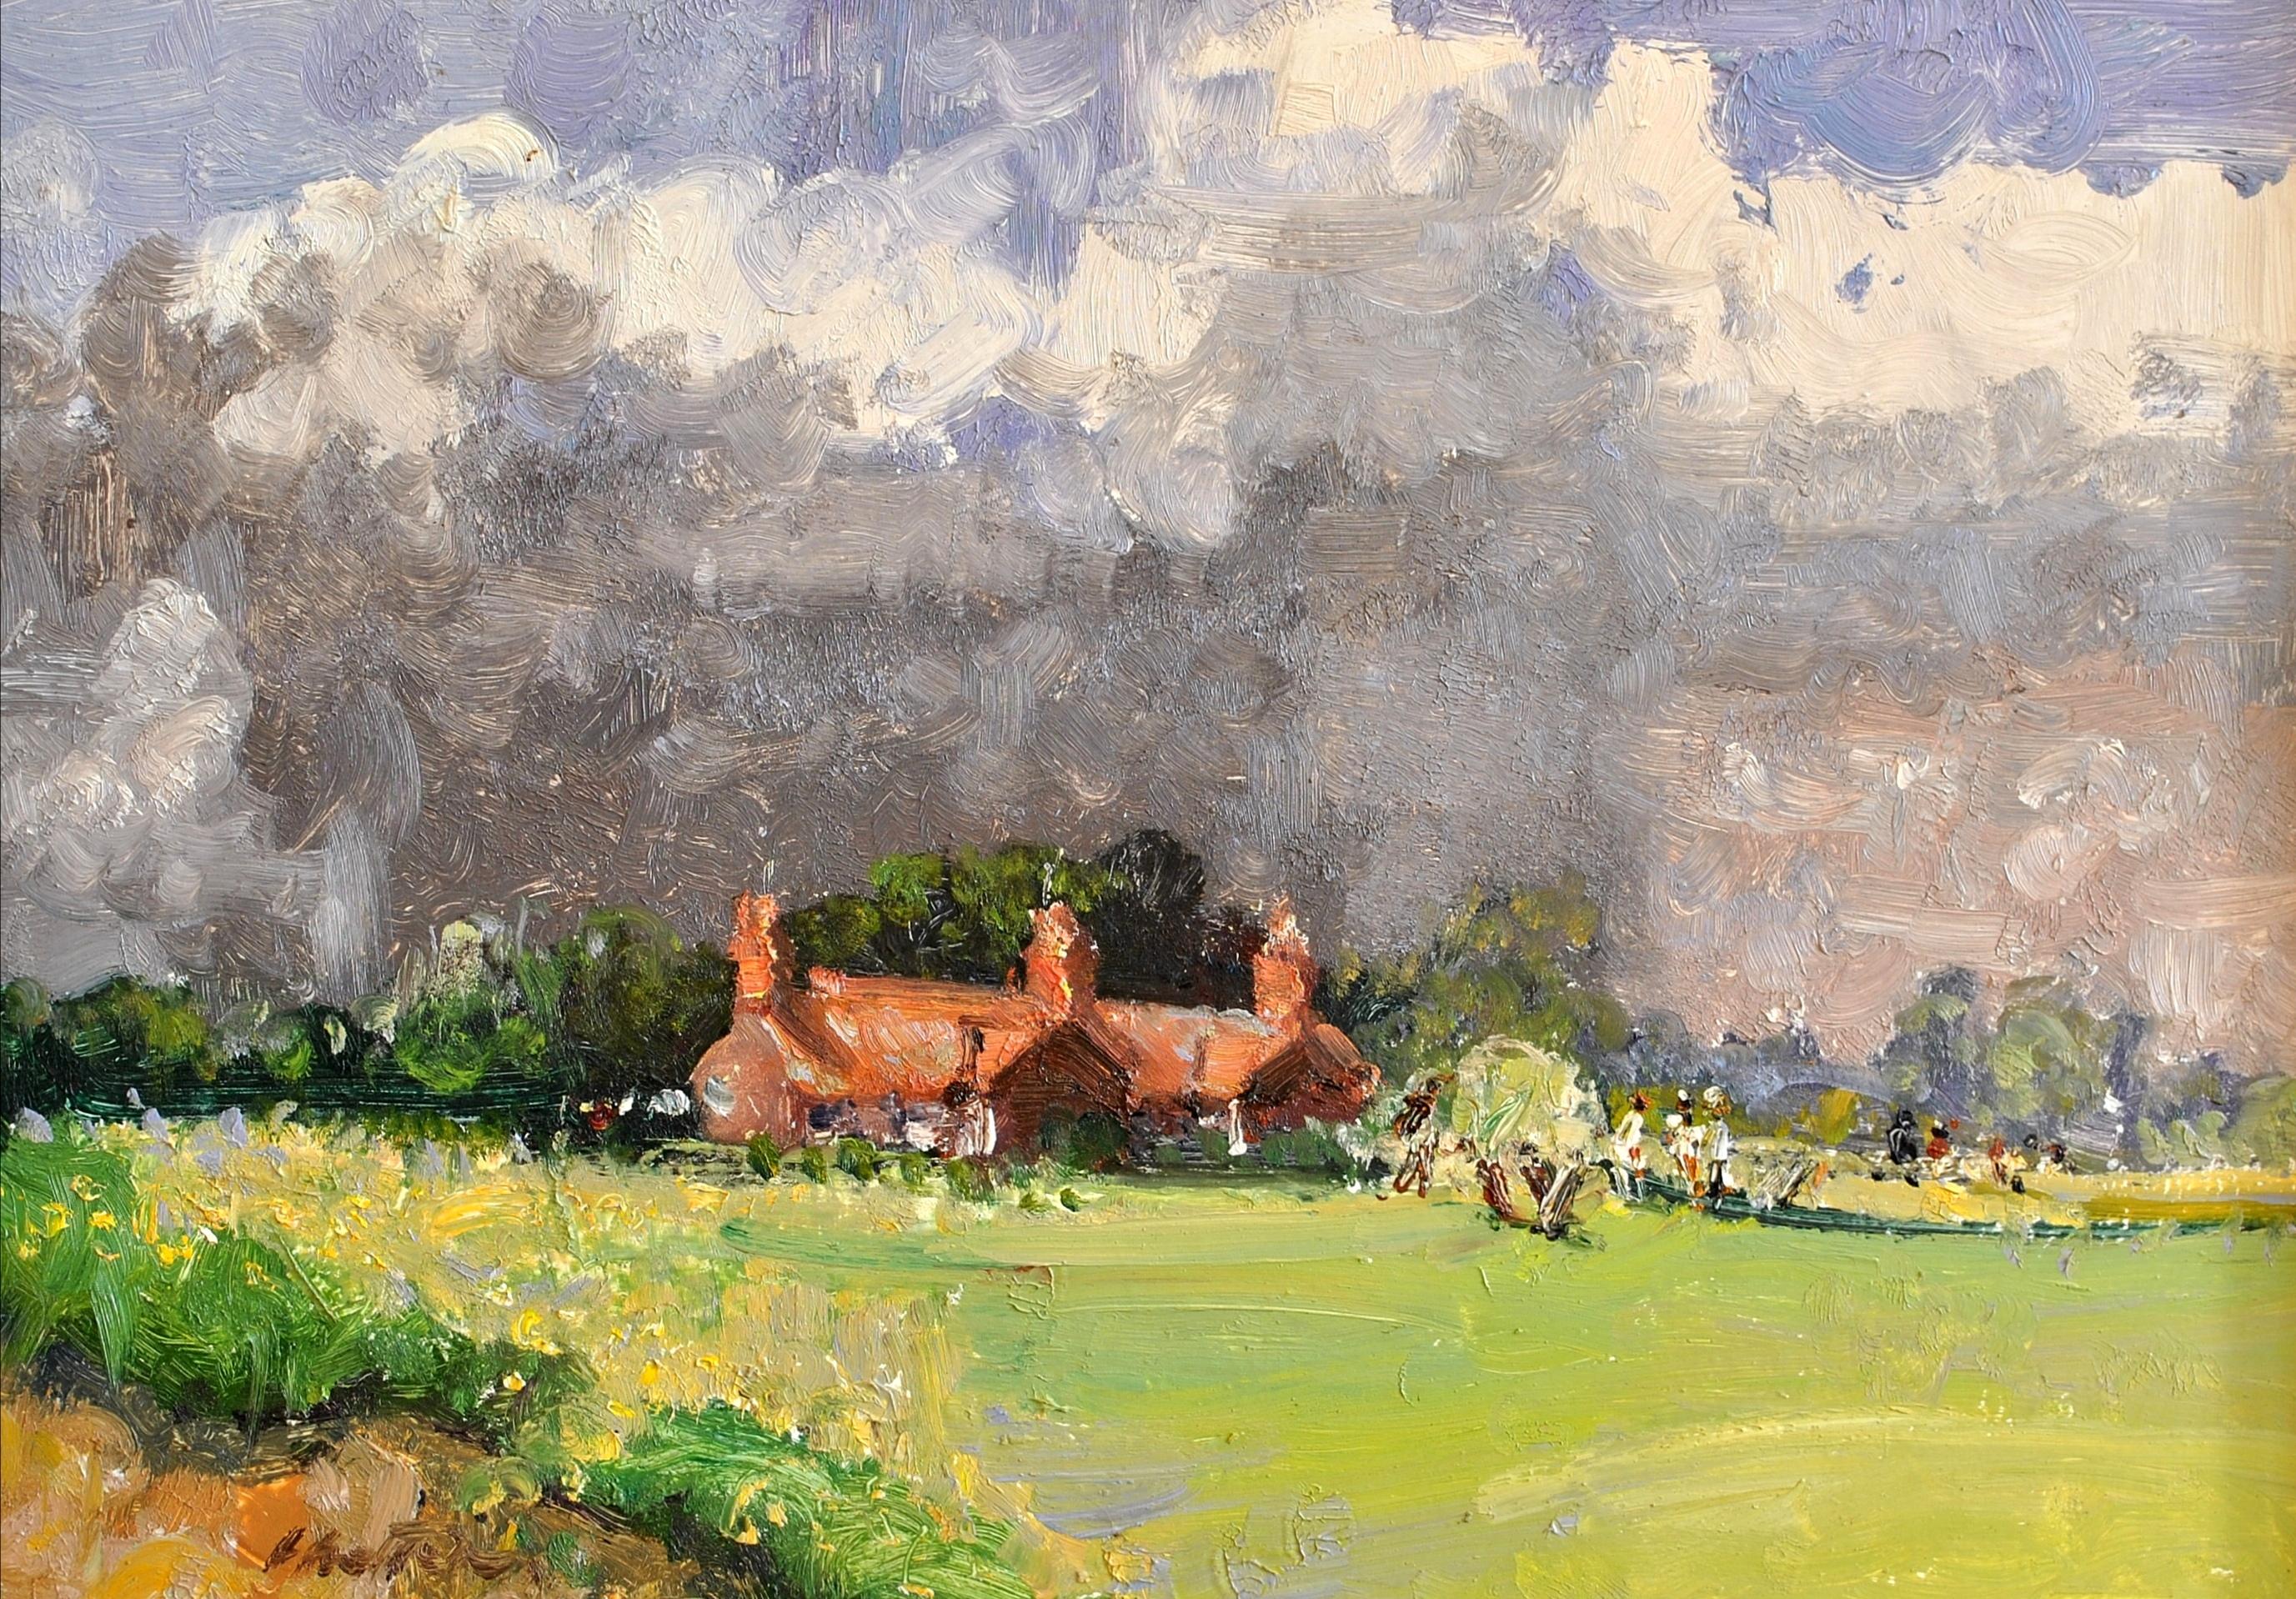 Cricket auf dem Grünen - Impressionistisches Landschaftsgemälde aus Suffolk East Anglia – Painting von Geoffrey Chatten